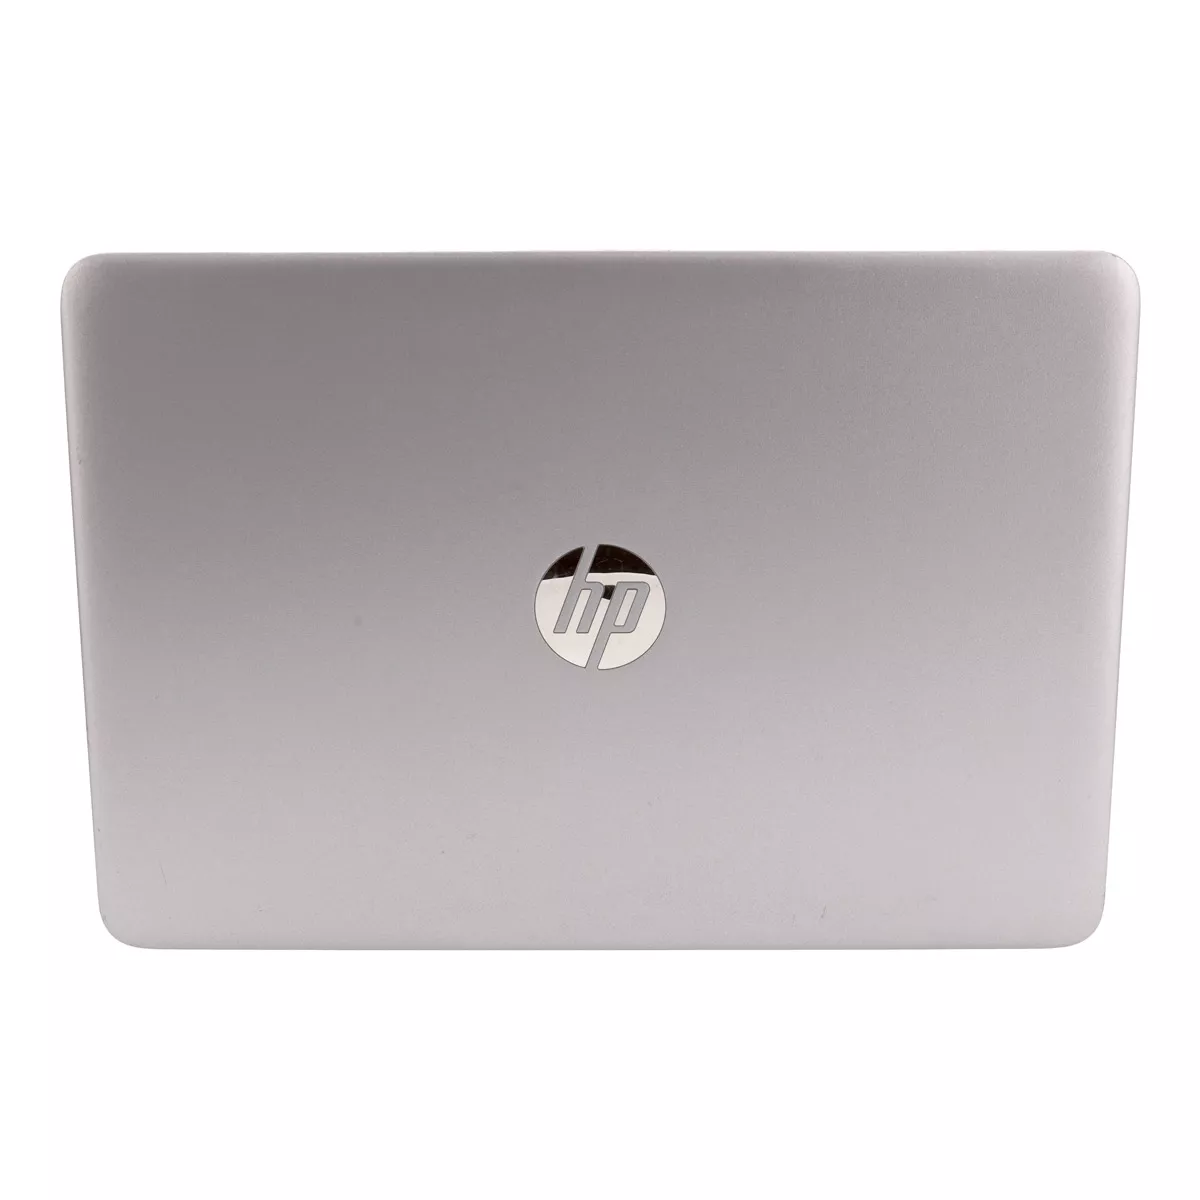 HP EliteBook 840 G3 Core i5 6300U 8 GB 240 GB M.2 SSD A+